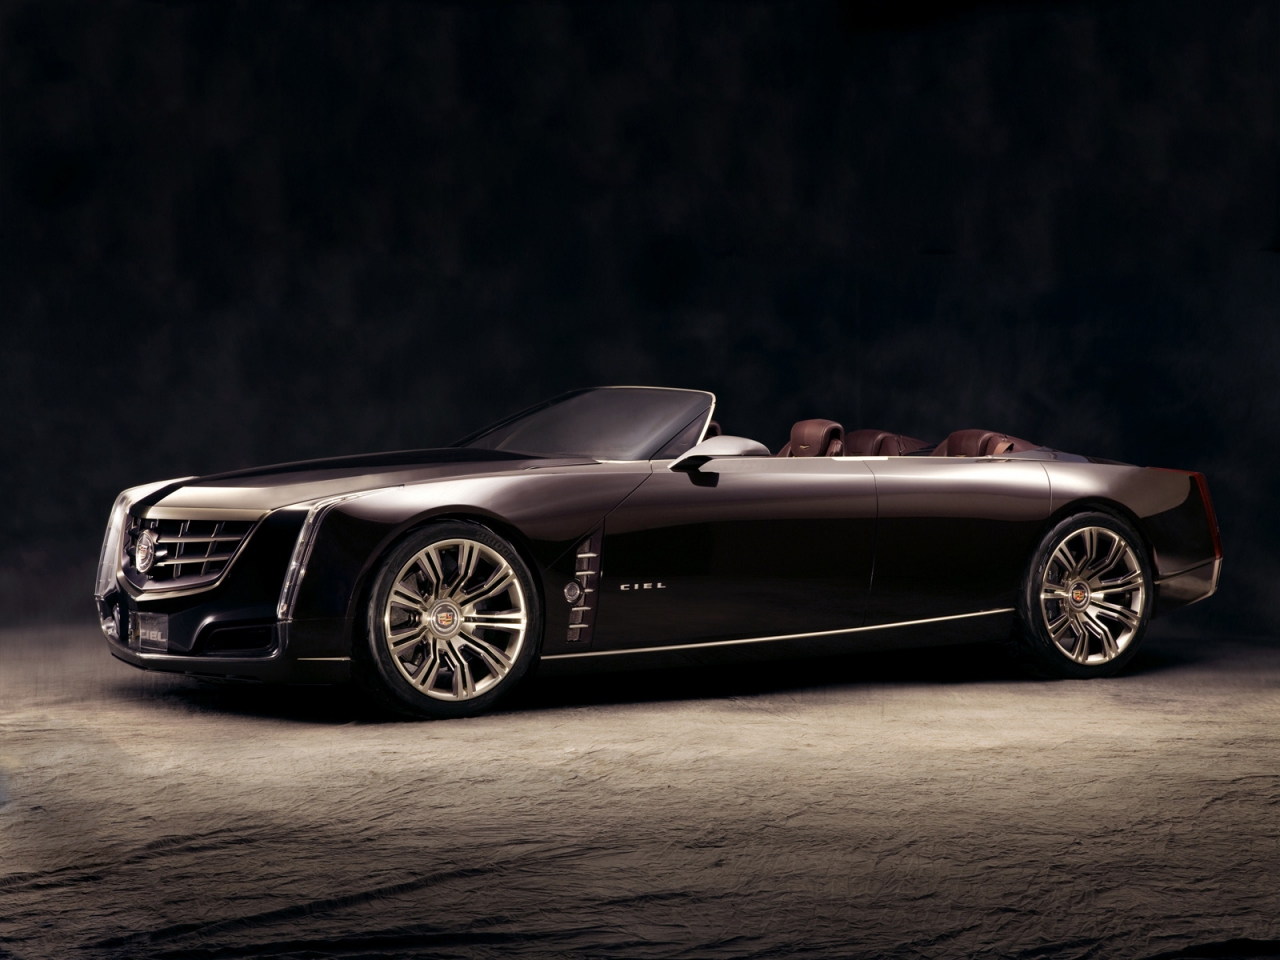 2011 Cadillac Ciel for 1280 x 960 resolution